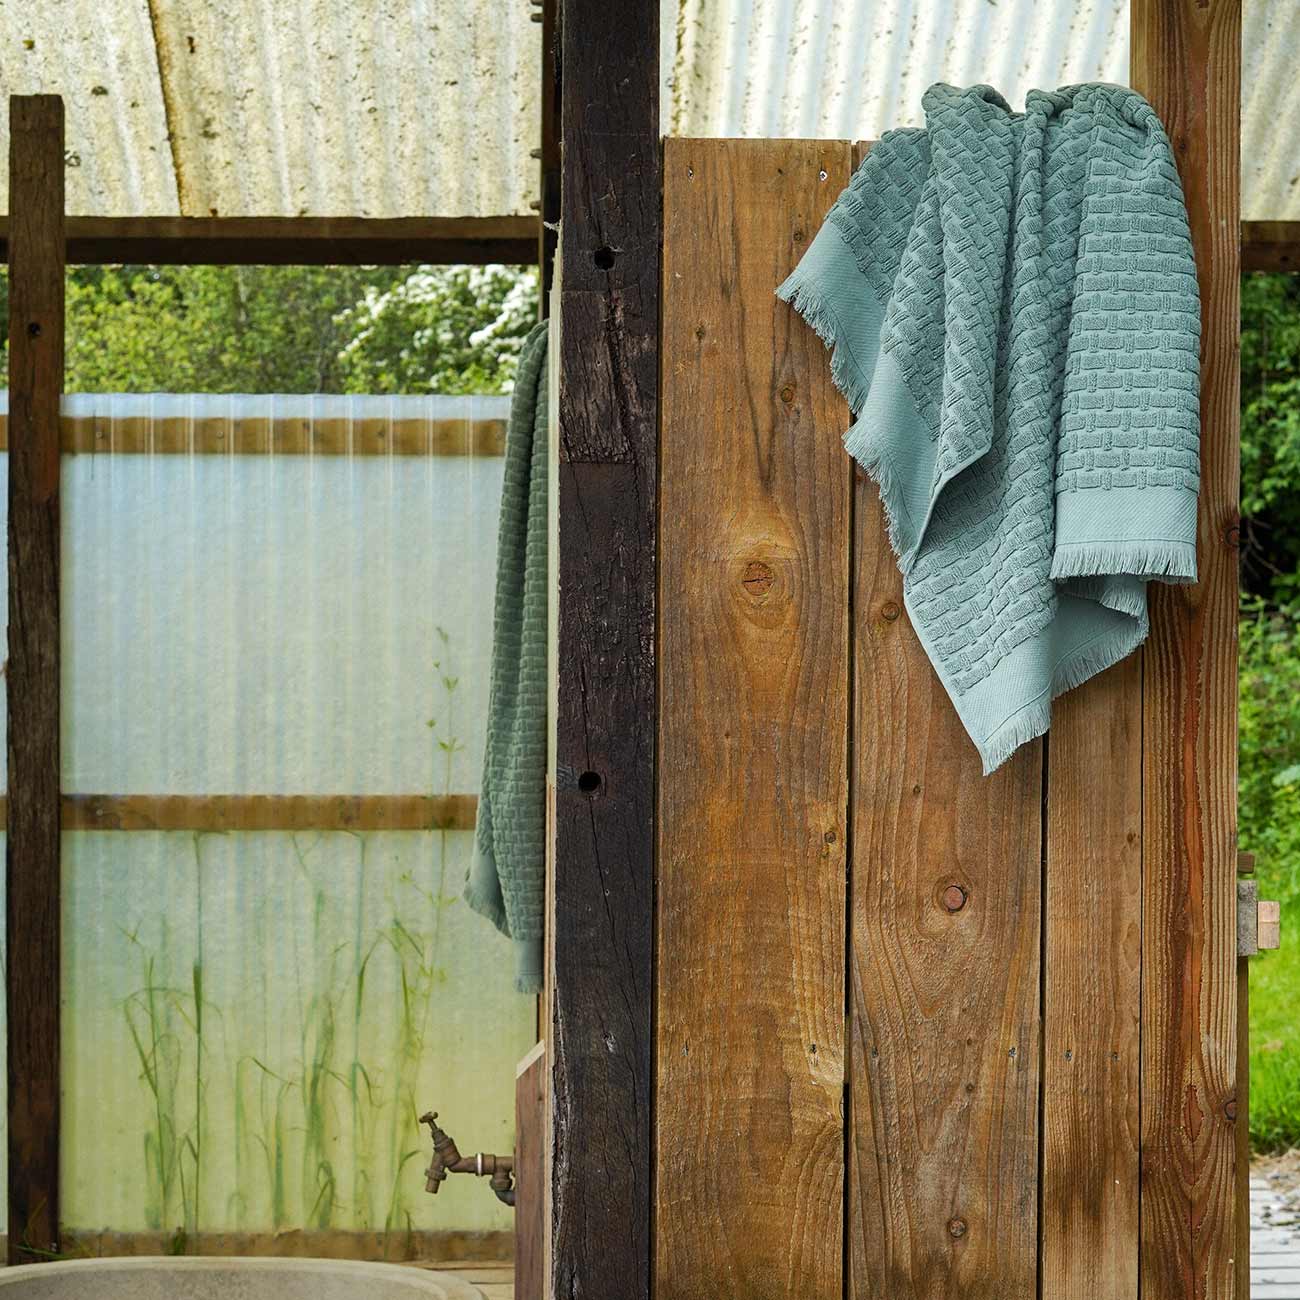 Ash Green Basketweave Cotton Bath Towel